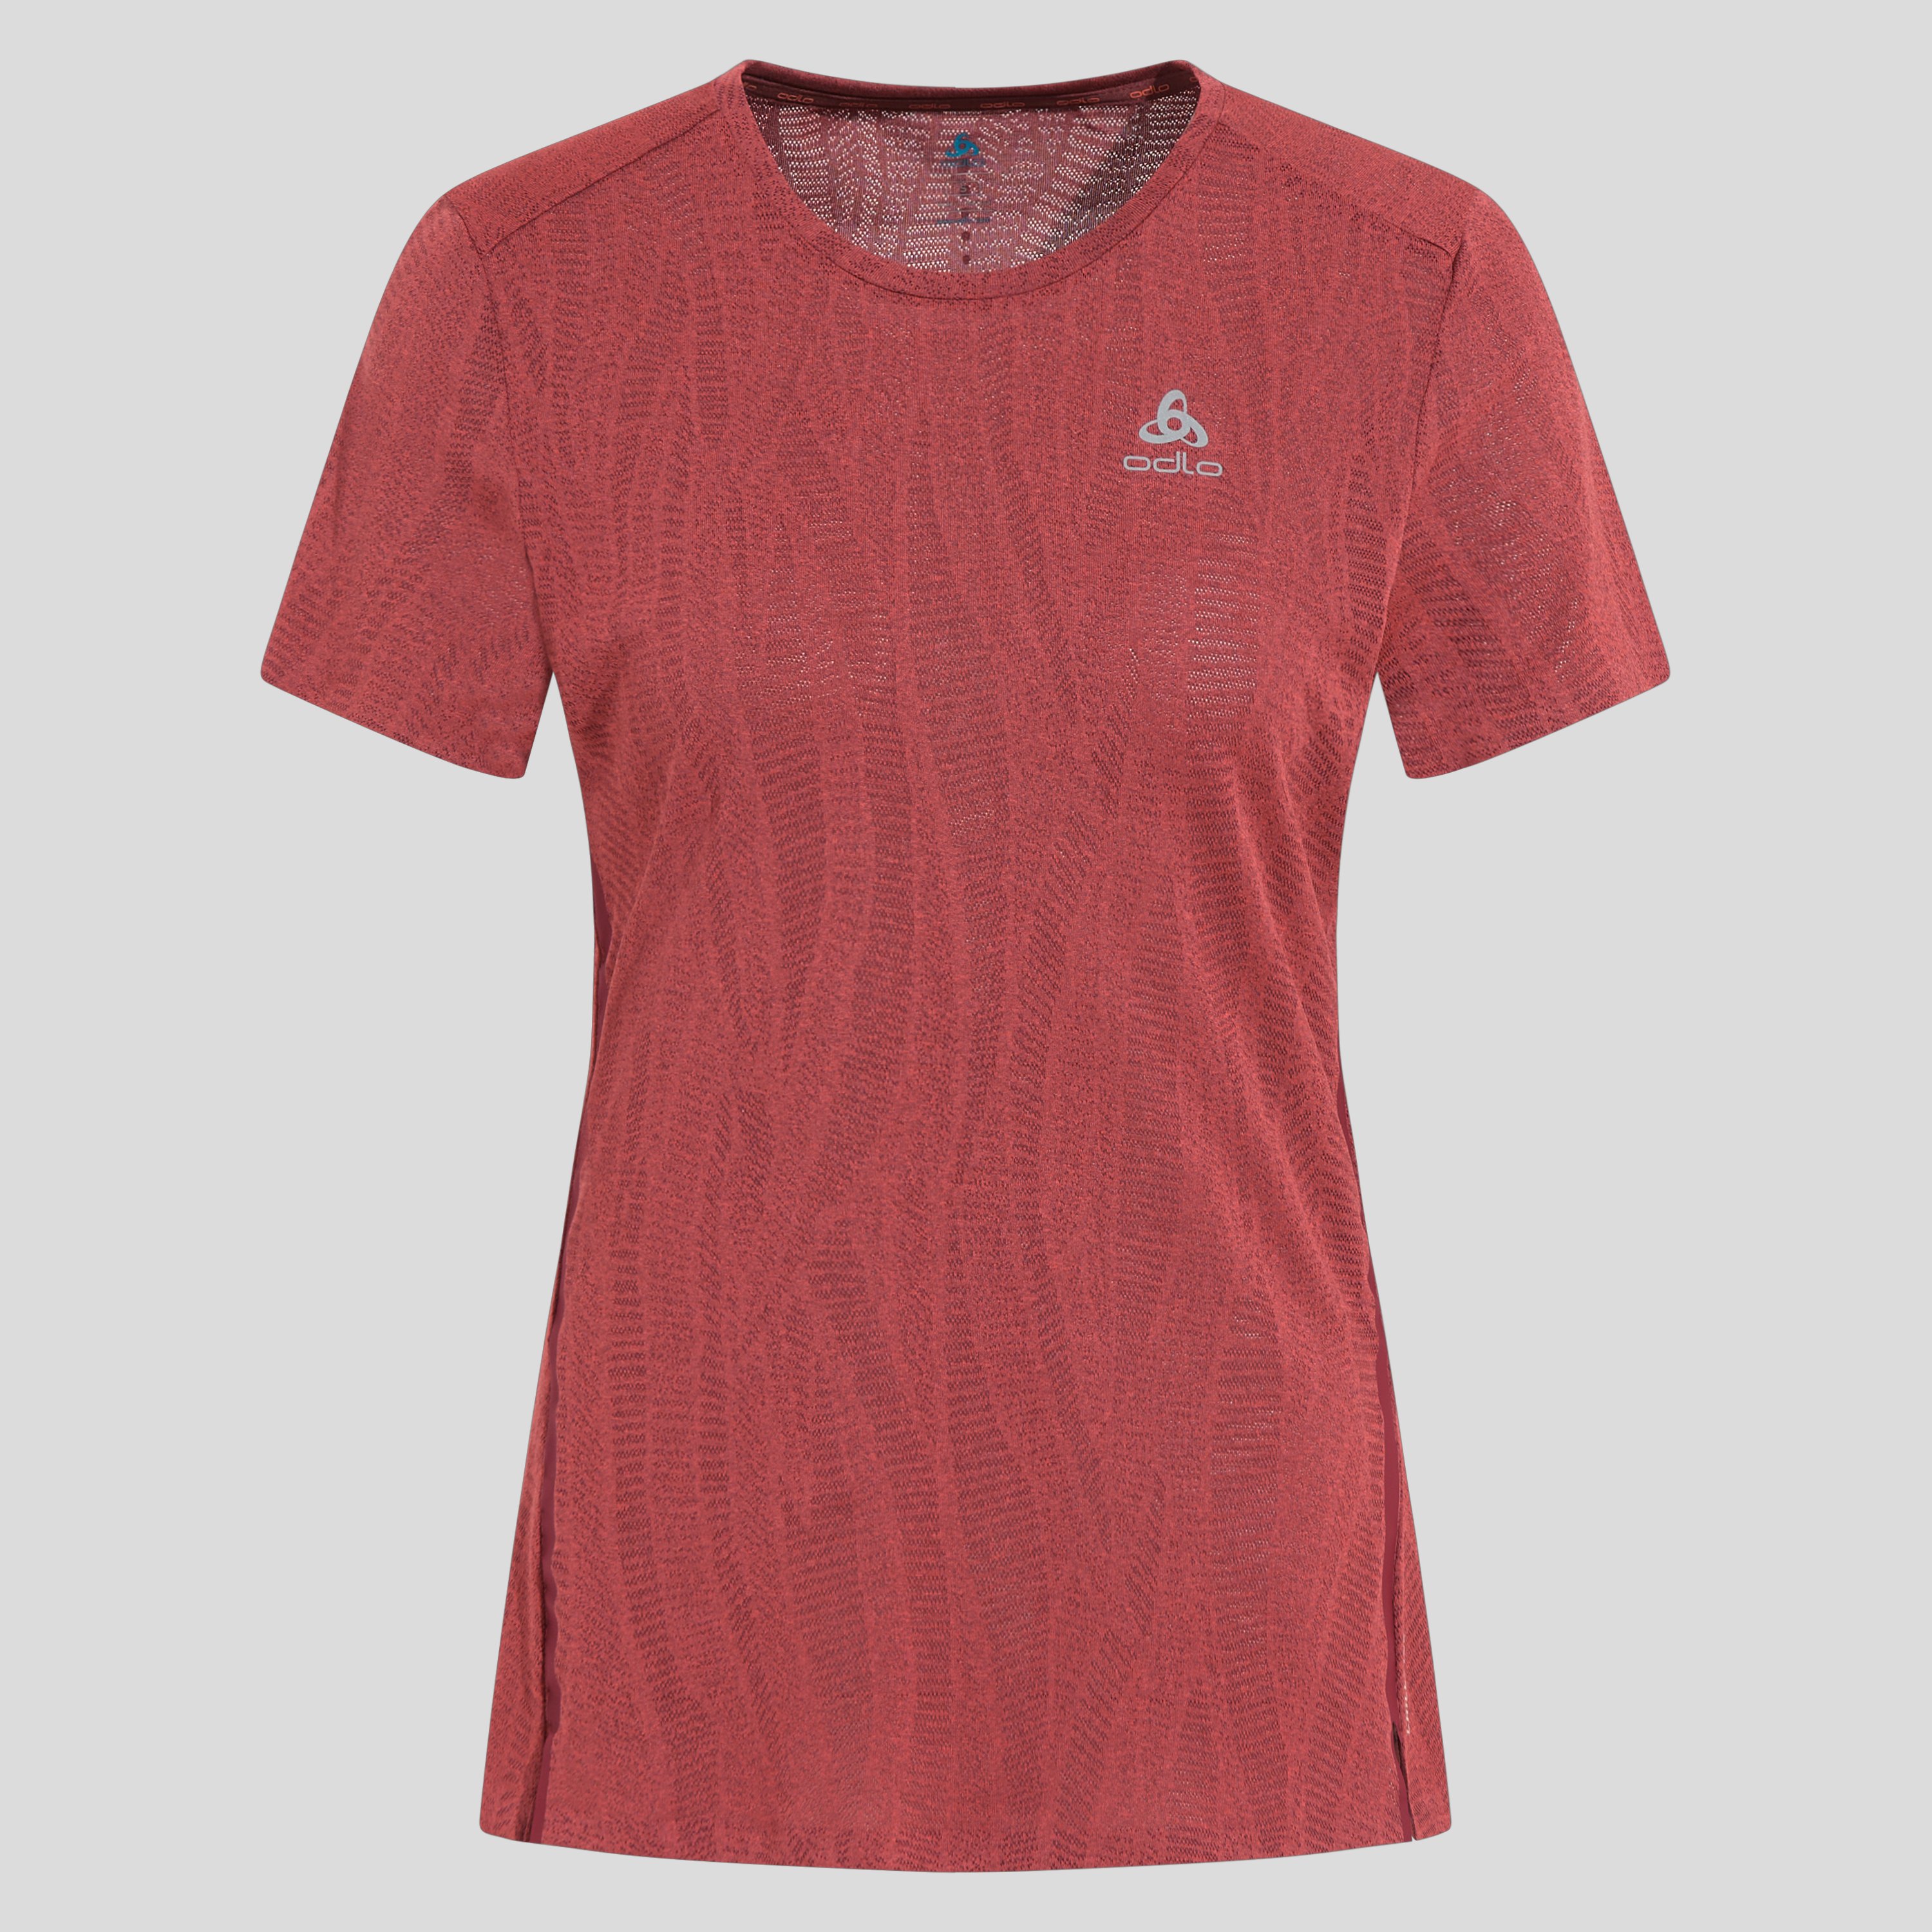 ODLO Zeroweight Engineered Chill-Tec Laufshirt für Damen, XL, rot